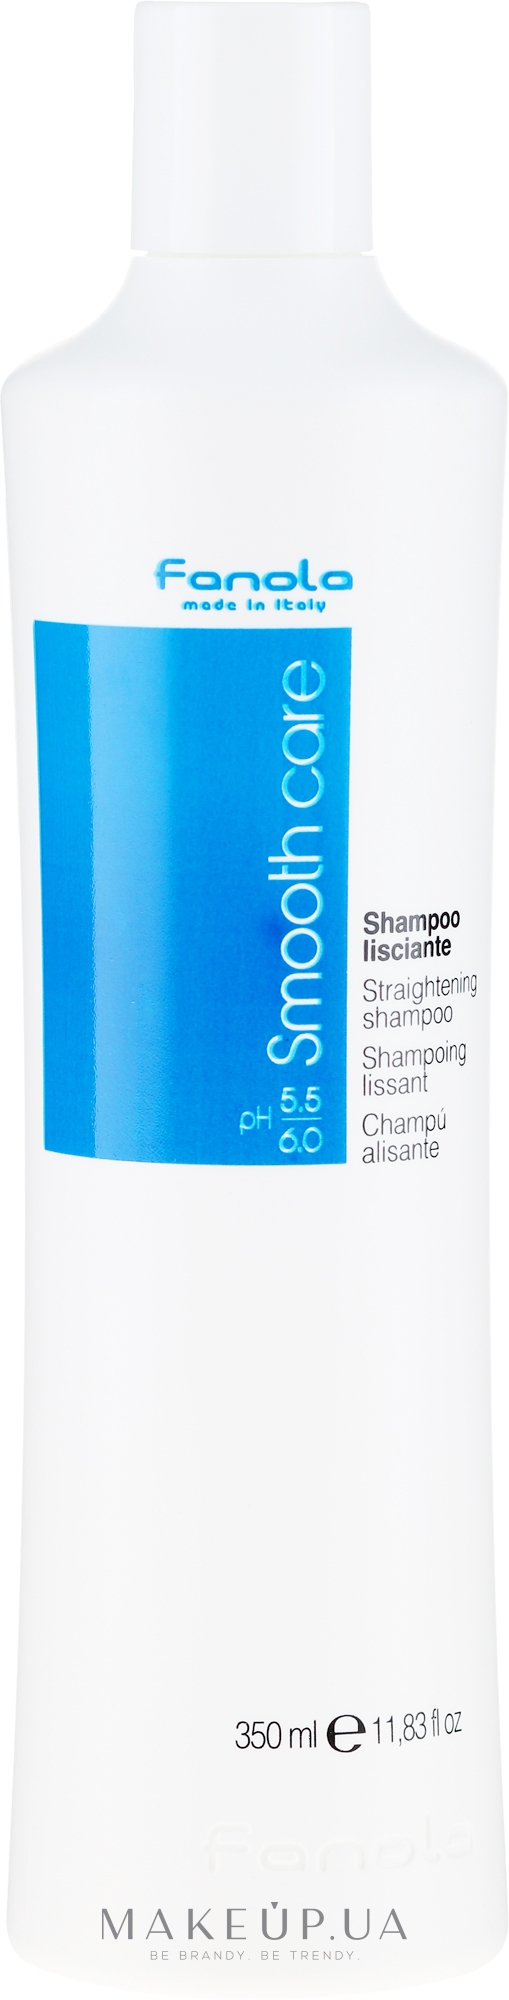 Шампунь для непослушных волос с маслом хлопка - Fanola Straightening Shampoo — фото 350ml